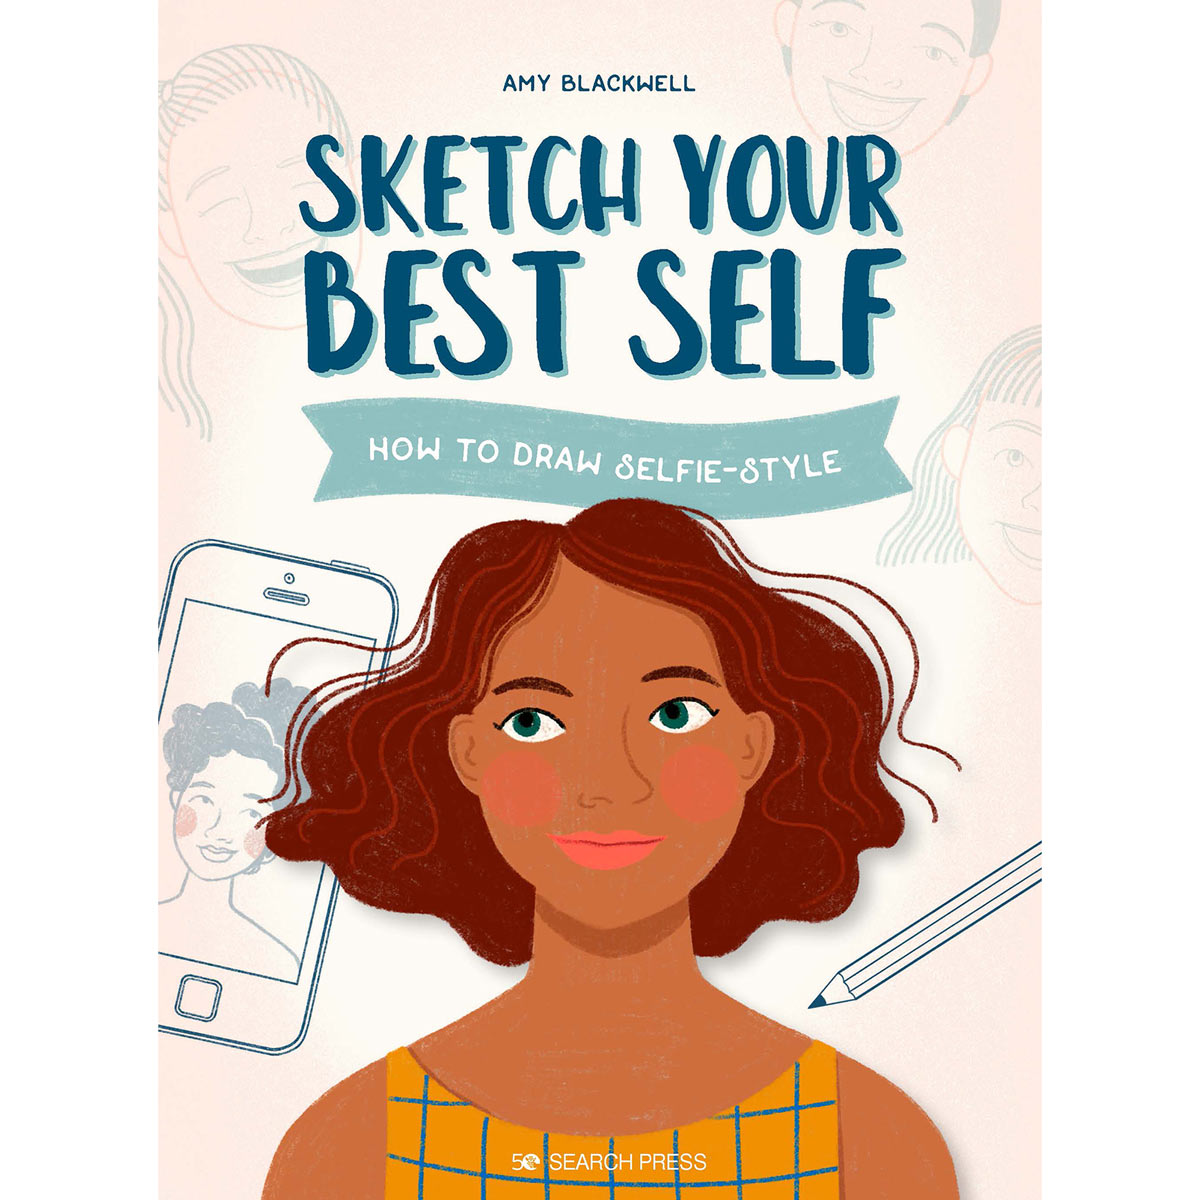 Suche Pressebücher - Skizzieren Sie Ihr bestes Selbst - Wie man den Selfie-Stil zeichnet